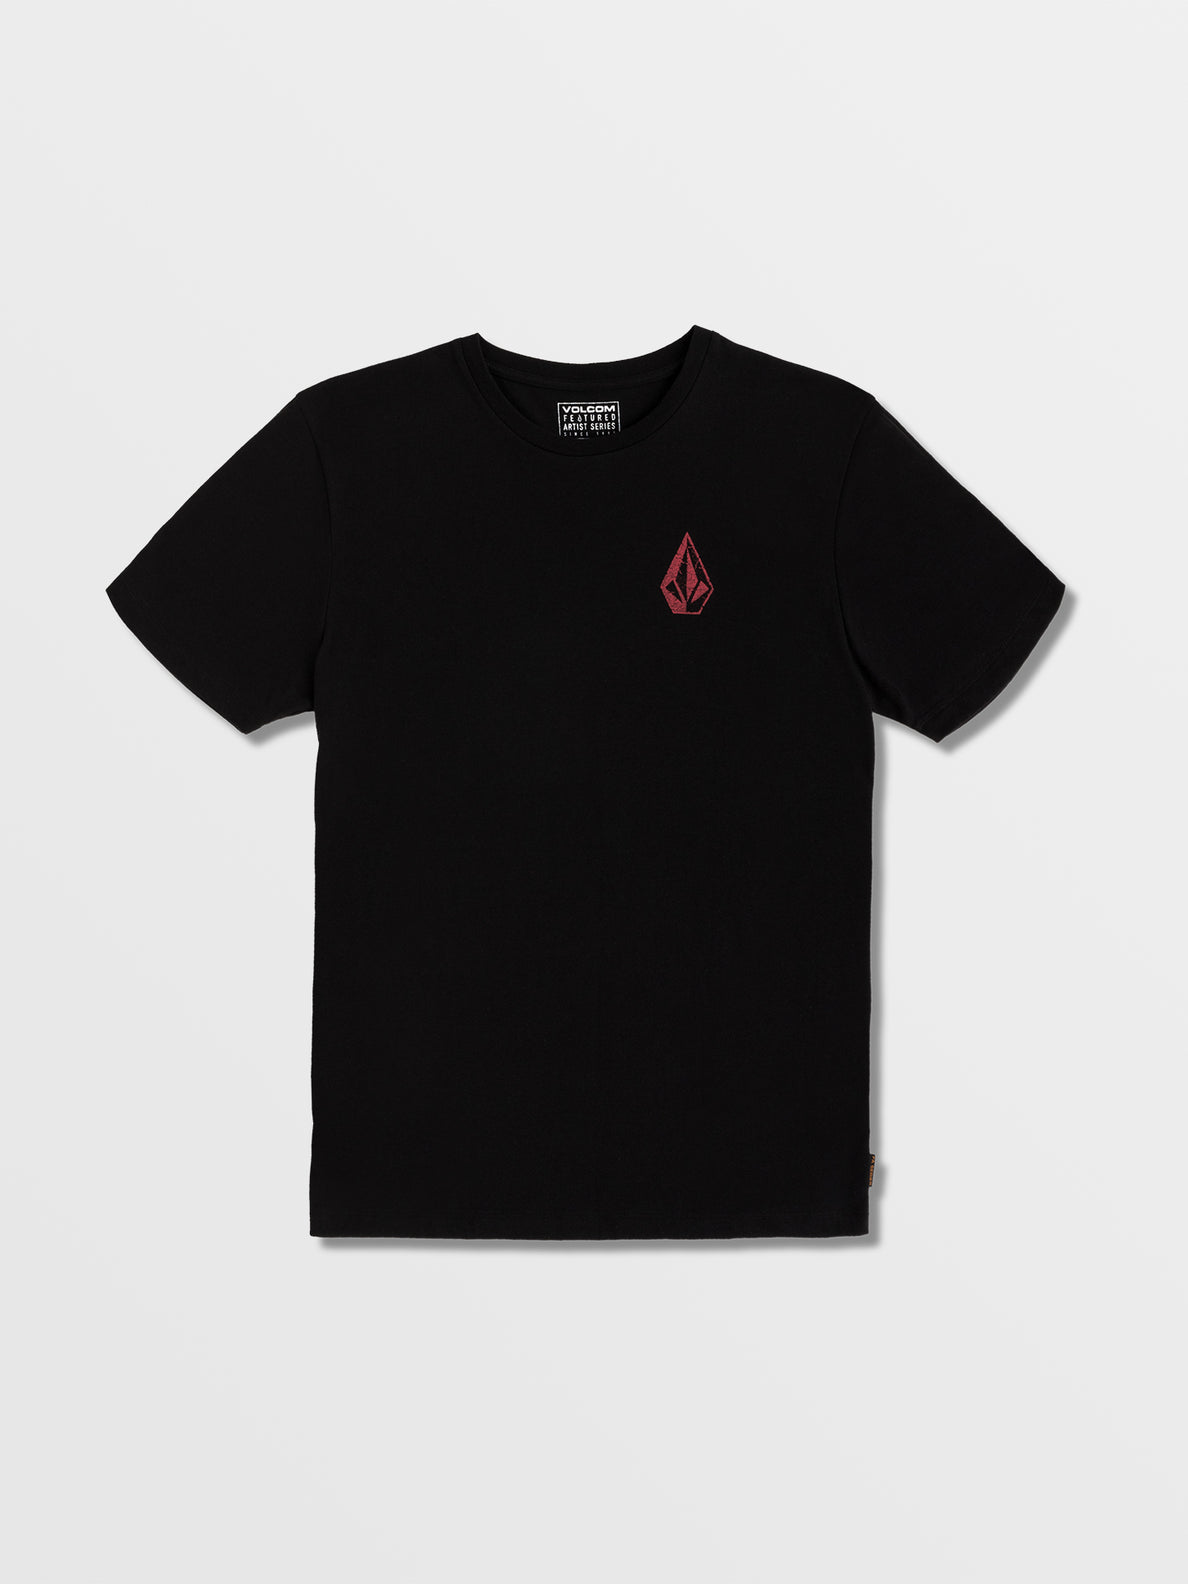 C. Vivary T-shirt - Black